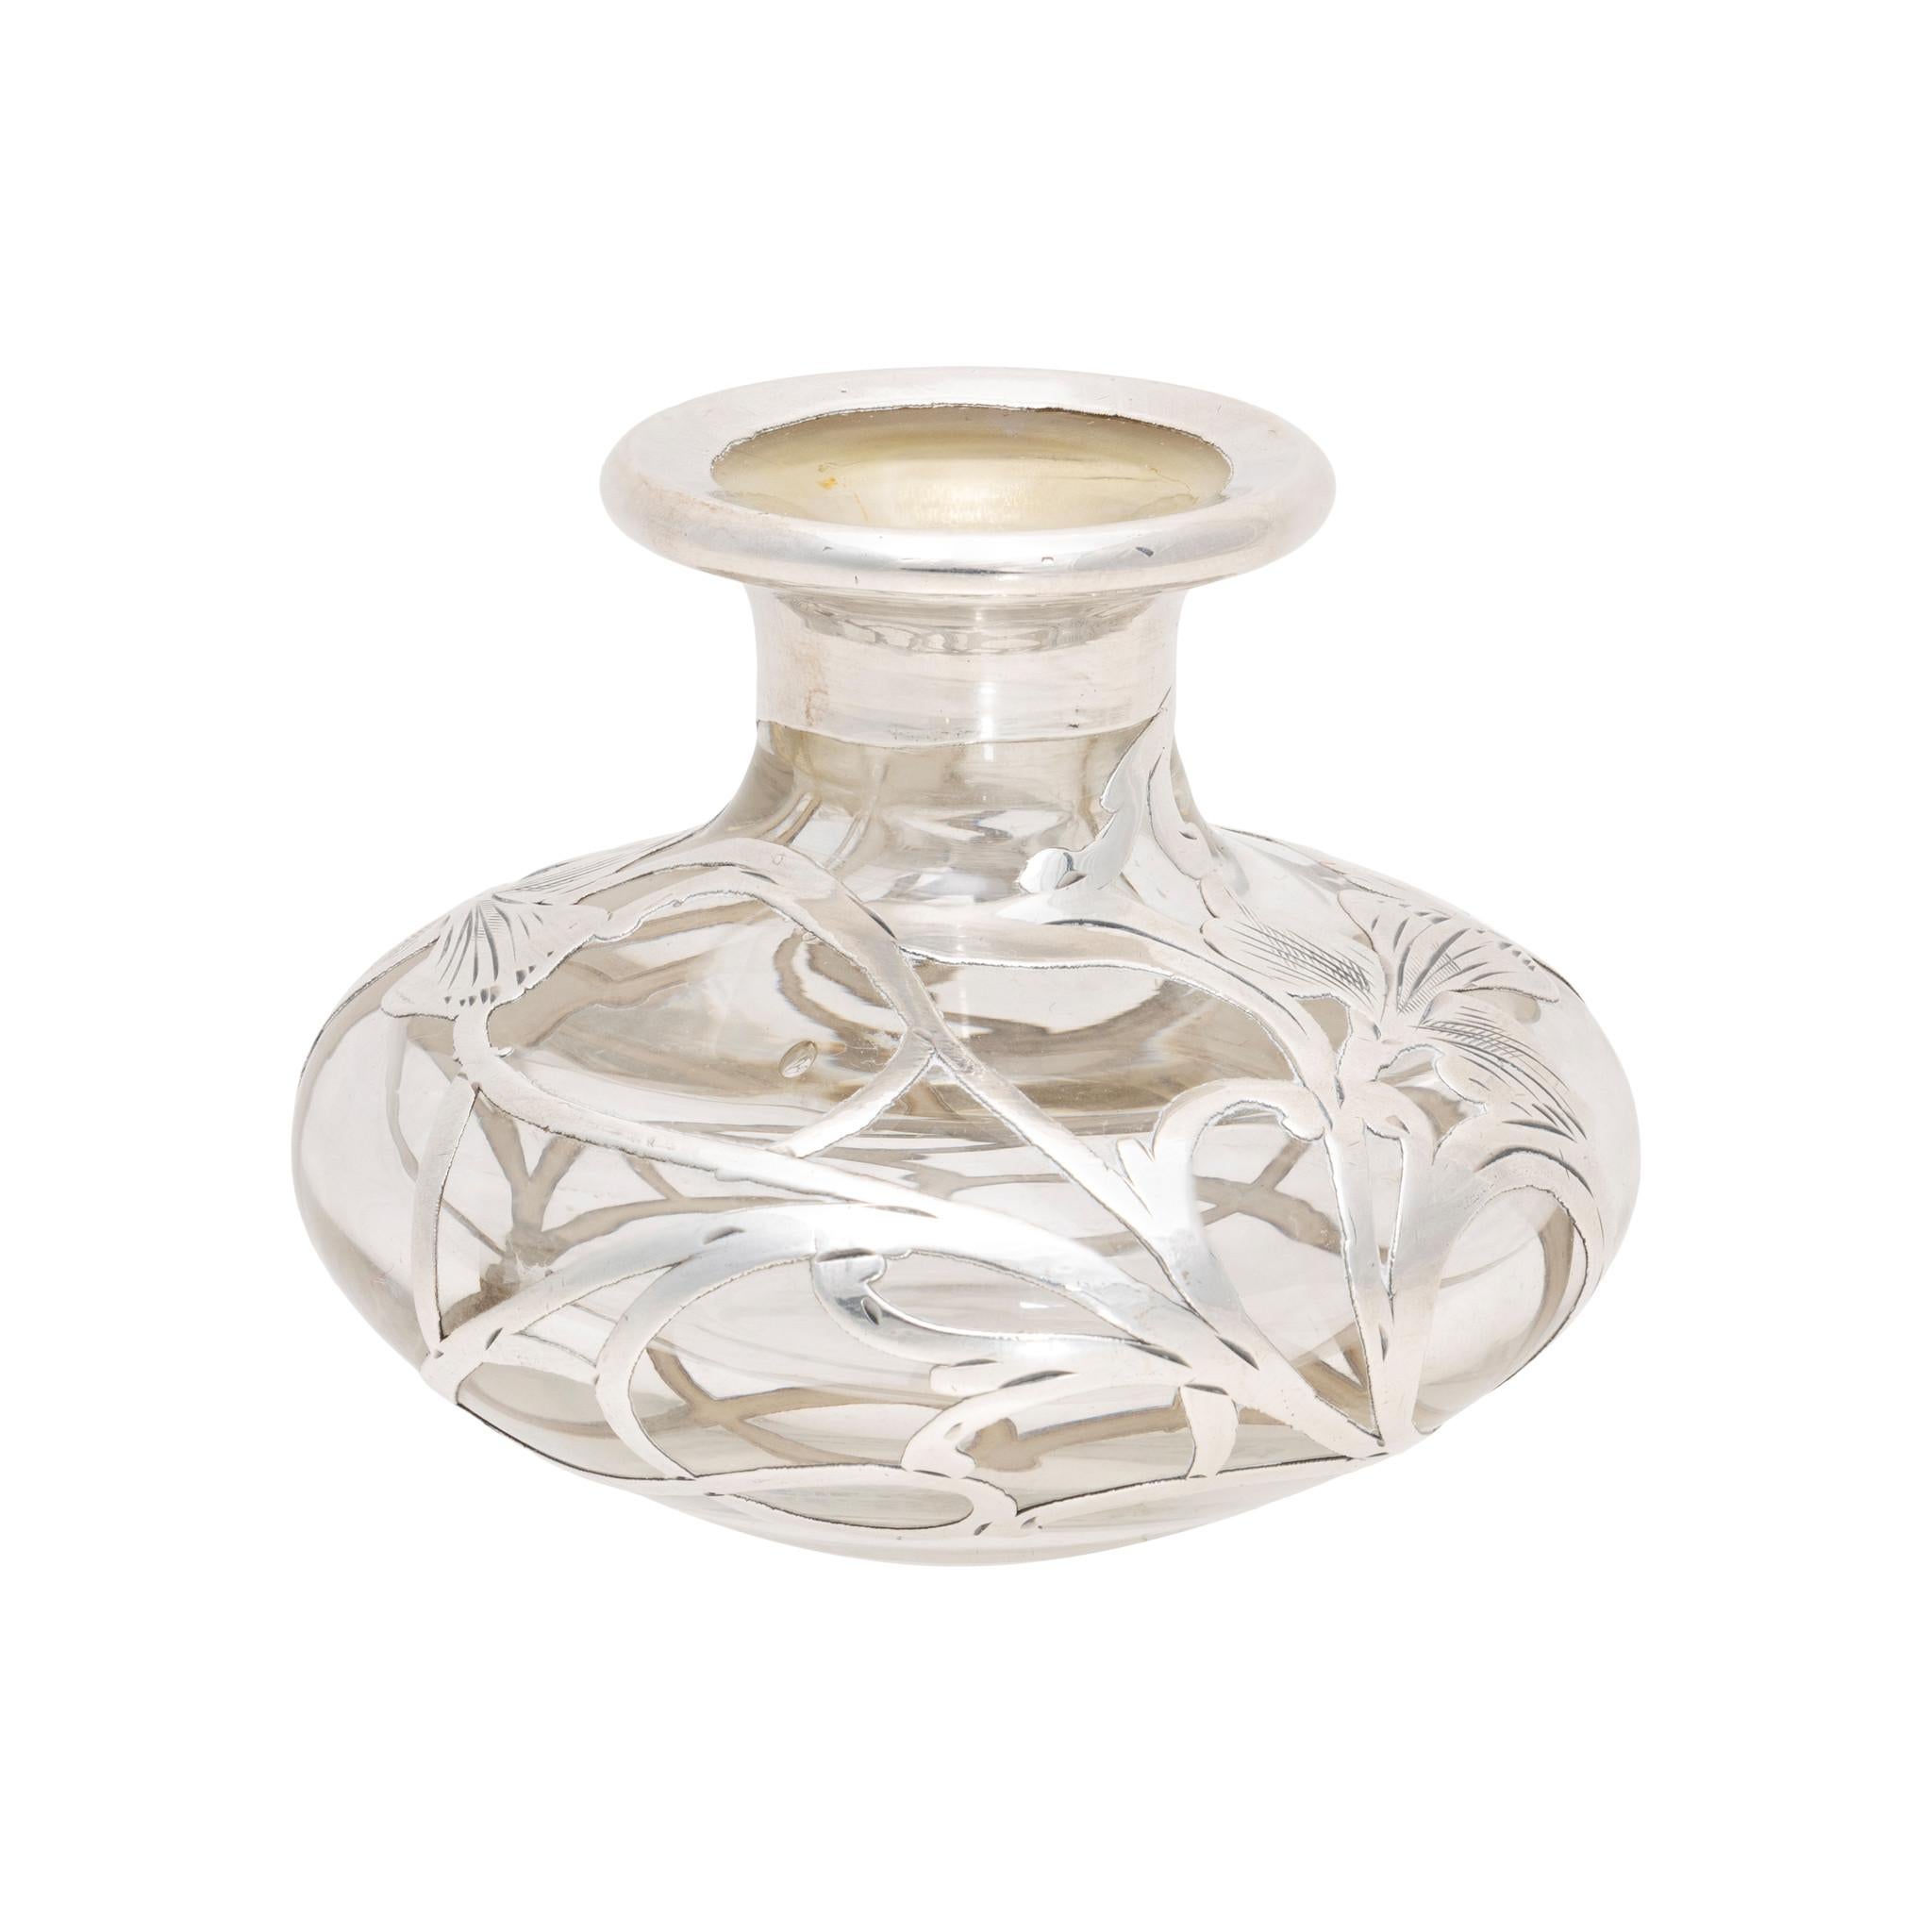 Flacon de parfum en verre argenté Alvin. Verre transparent et argenterie de style art nouveau, avec deux iris. Le centre est monogrammé avec un 